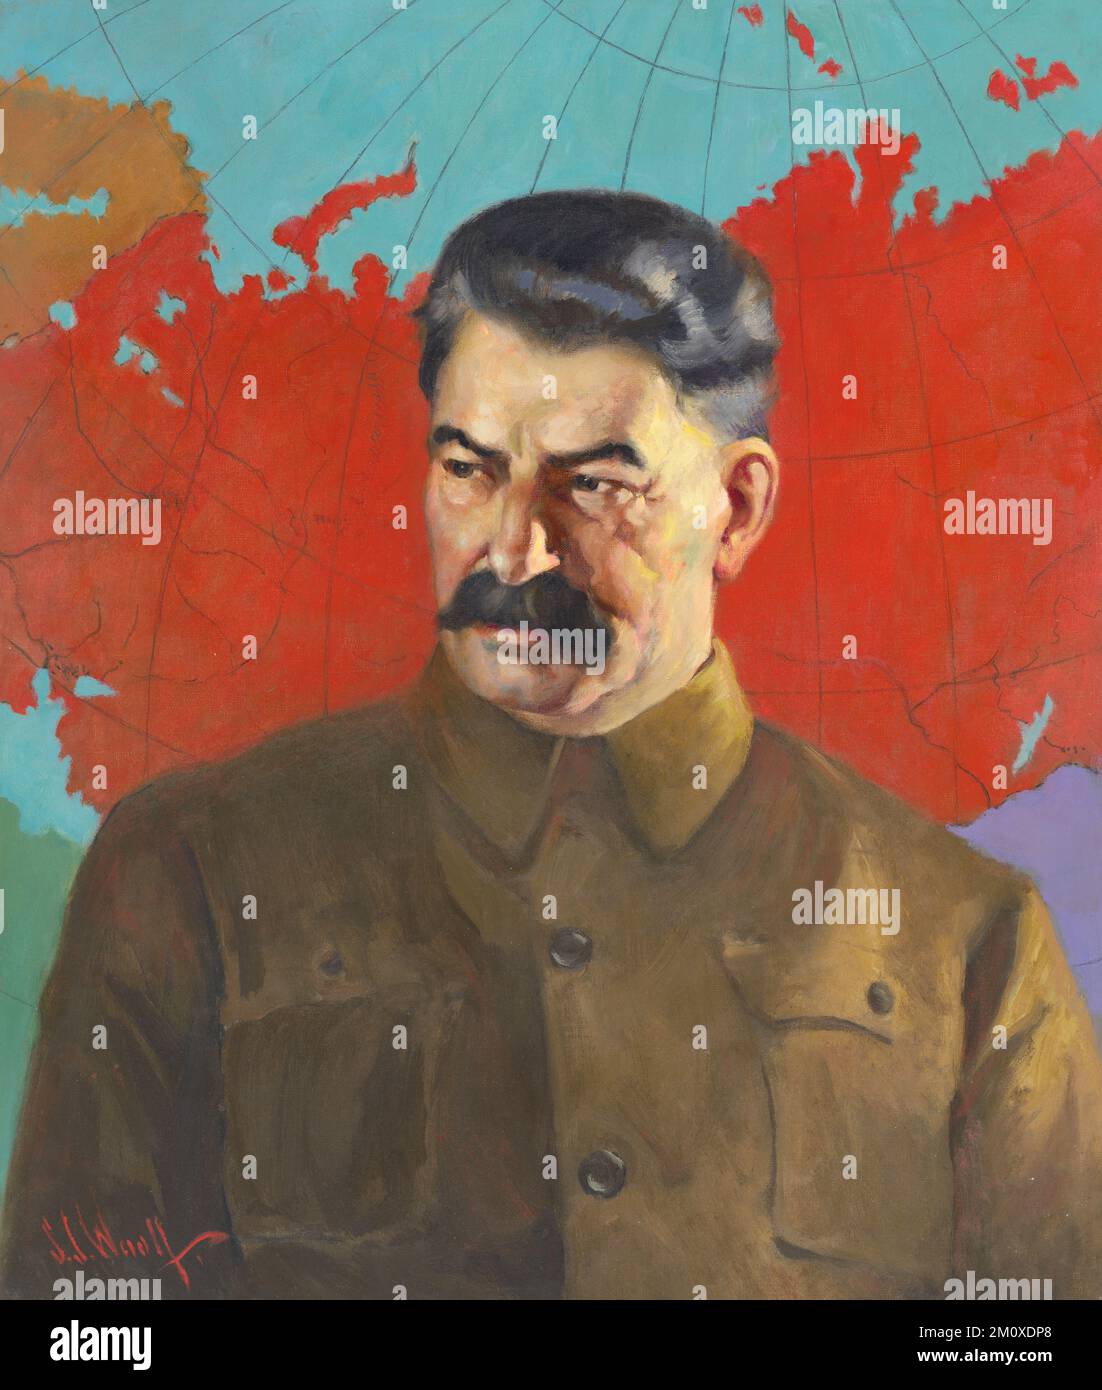 Porträt von Joseph Stalin, Führer der Sowjetunion von 1924 bis 1953, Gemälde von Samuel Johnson Woolf Ca. 1937. Stalin steht vor einer Karte der UdSSR. Stockfoto